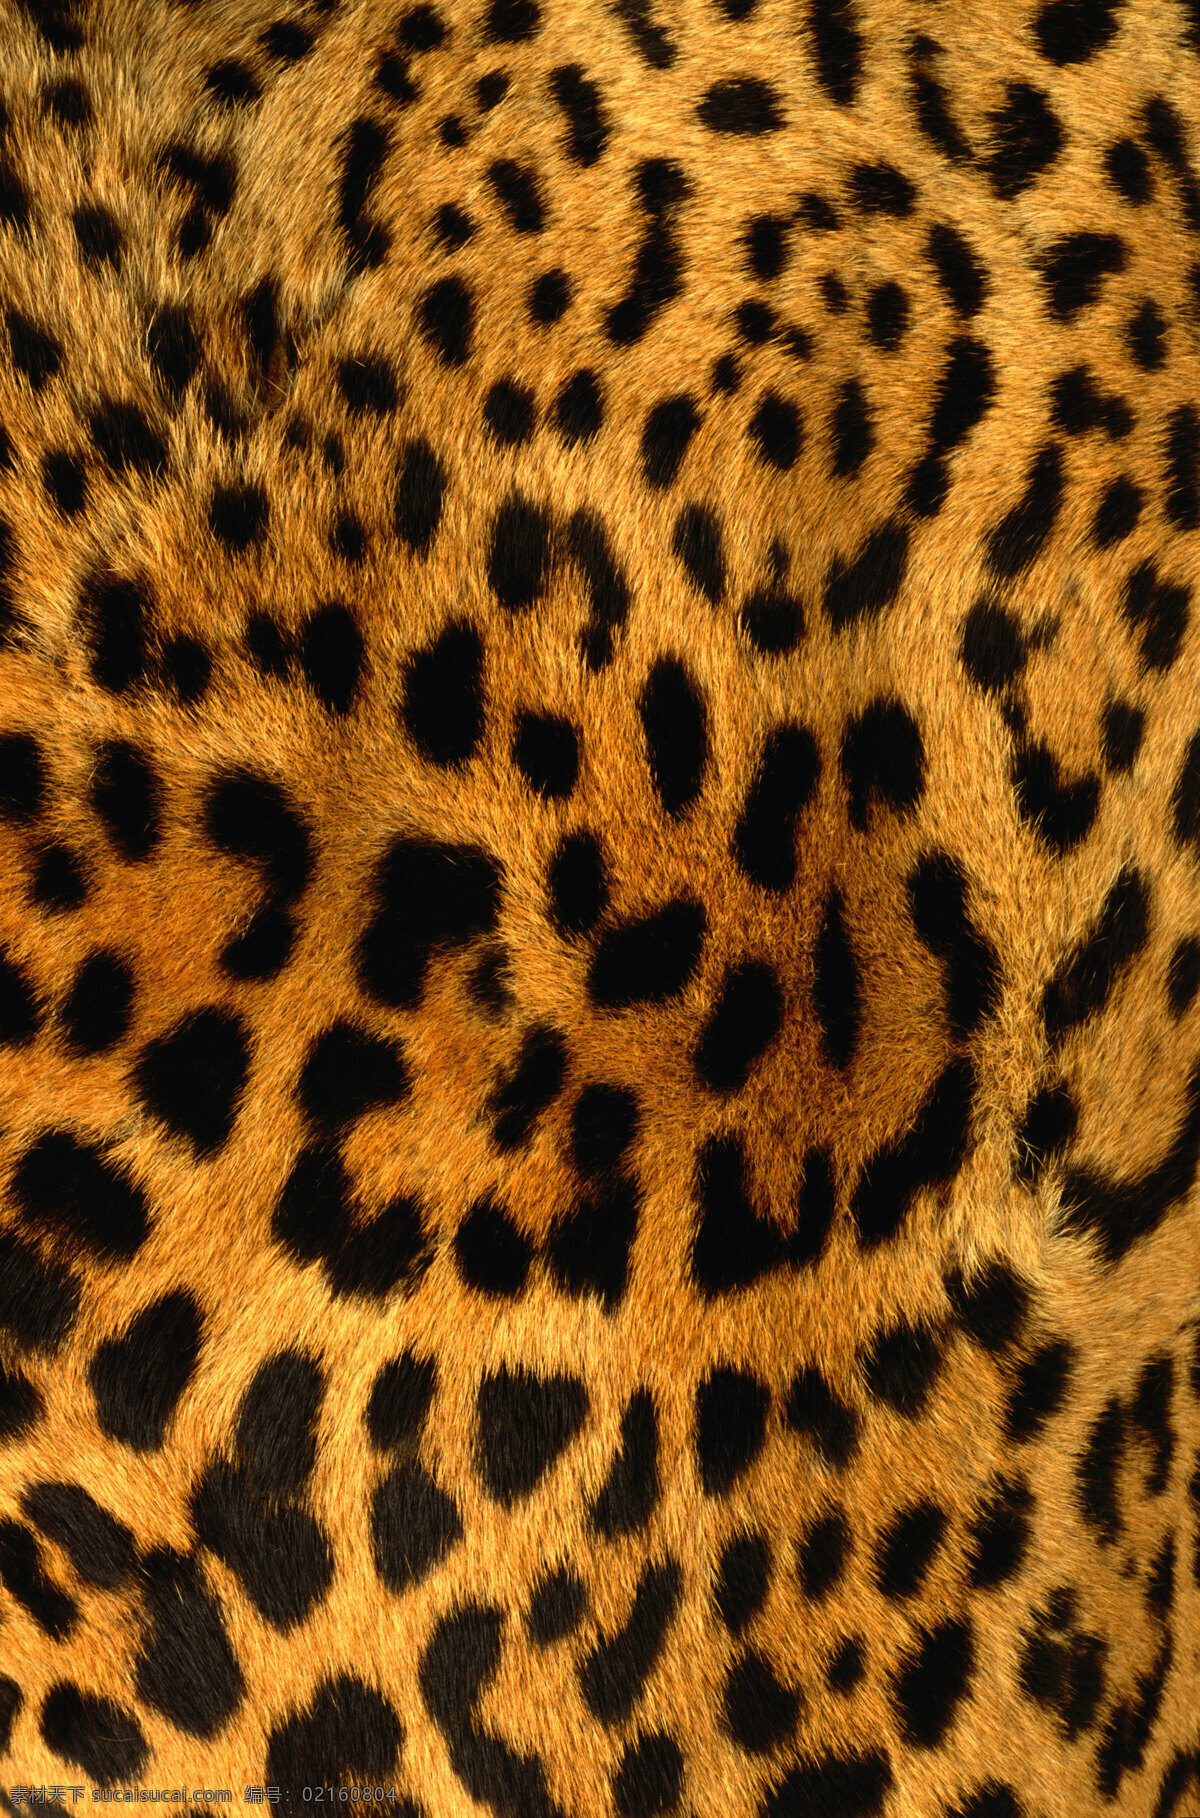 豹纹 动物毛皮 纹理 设计素材 广告素材 生物世界 野生动物